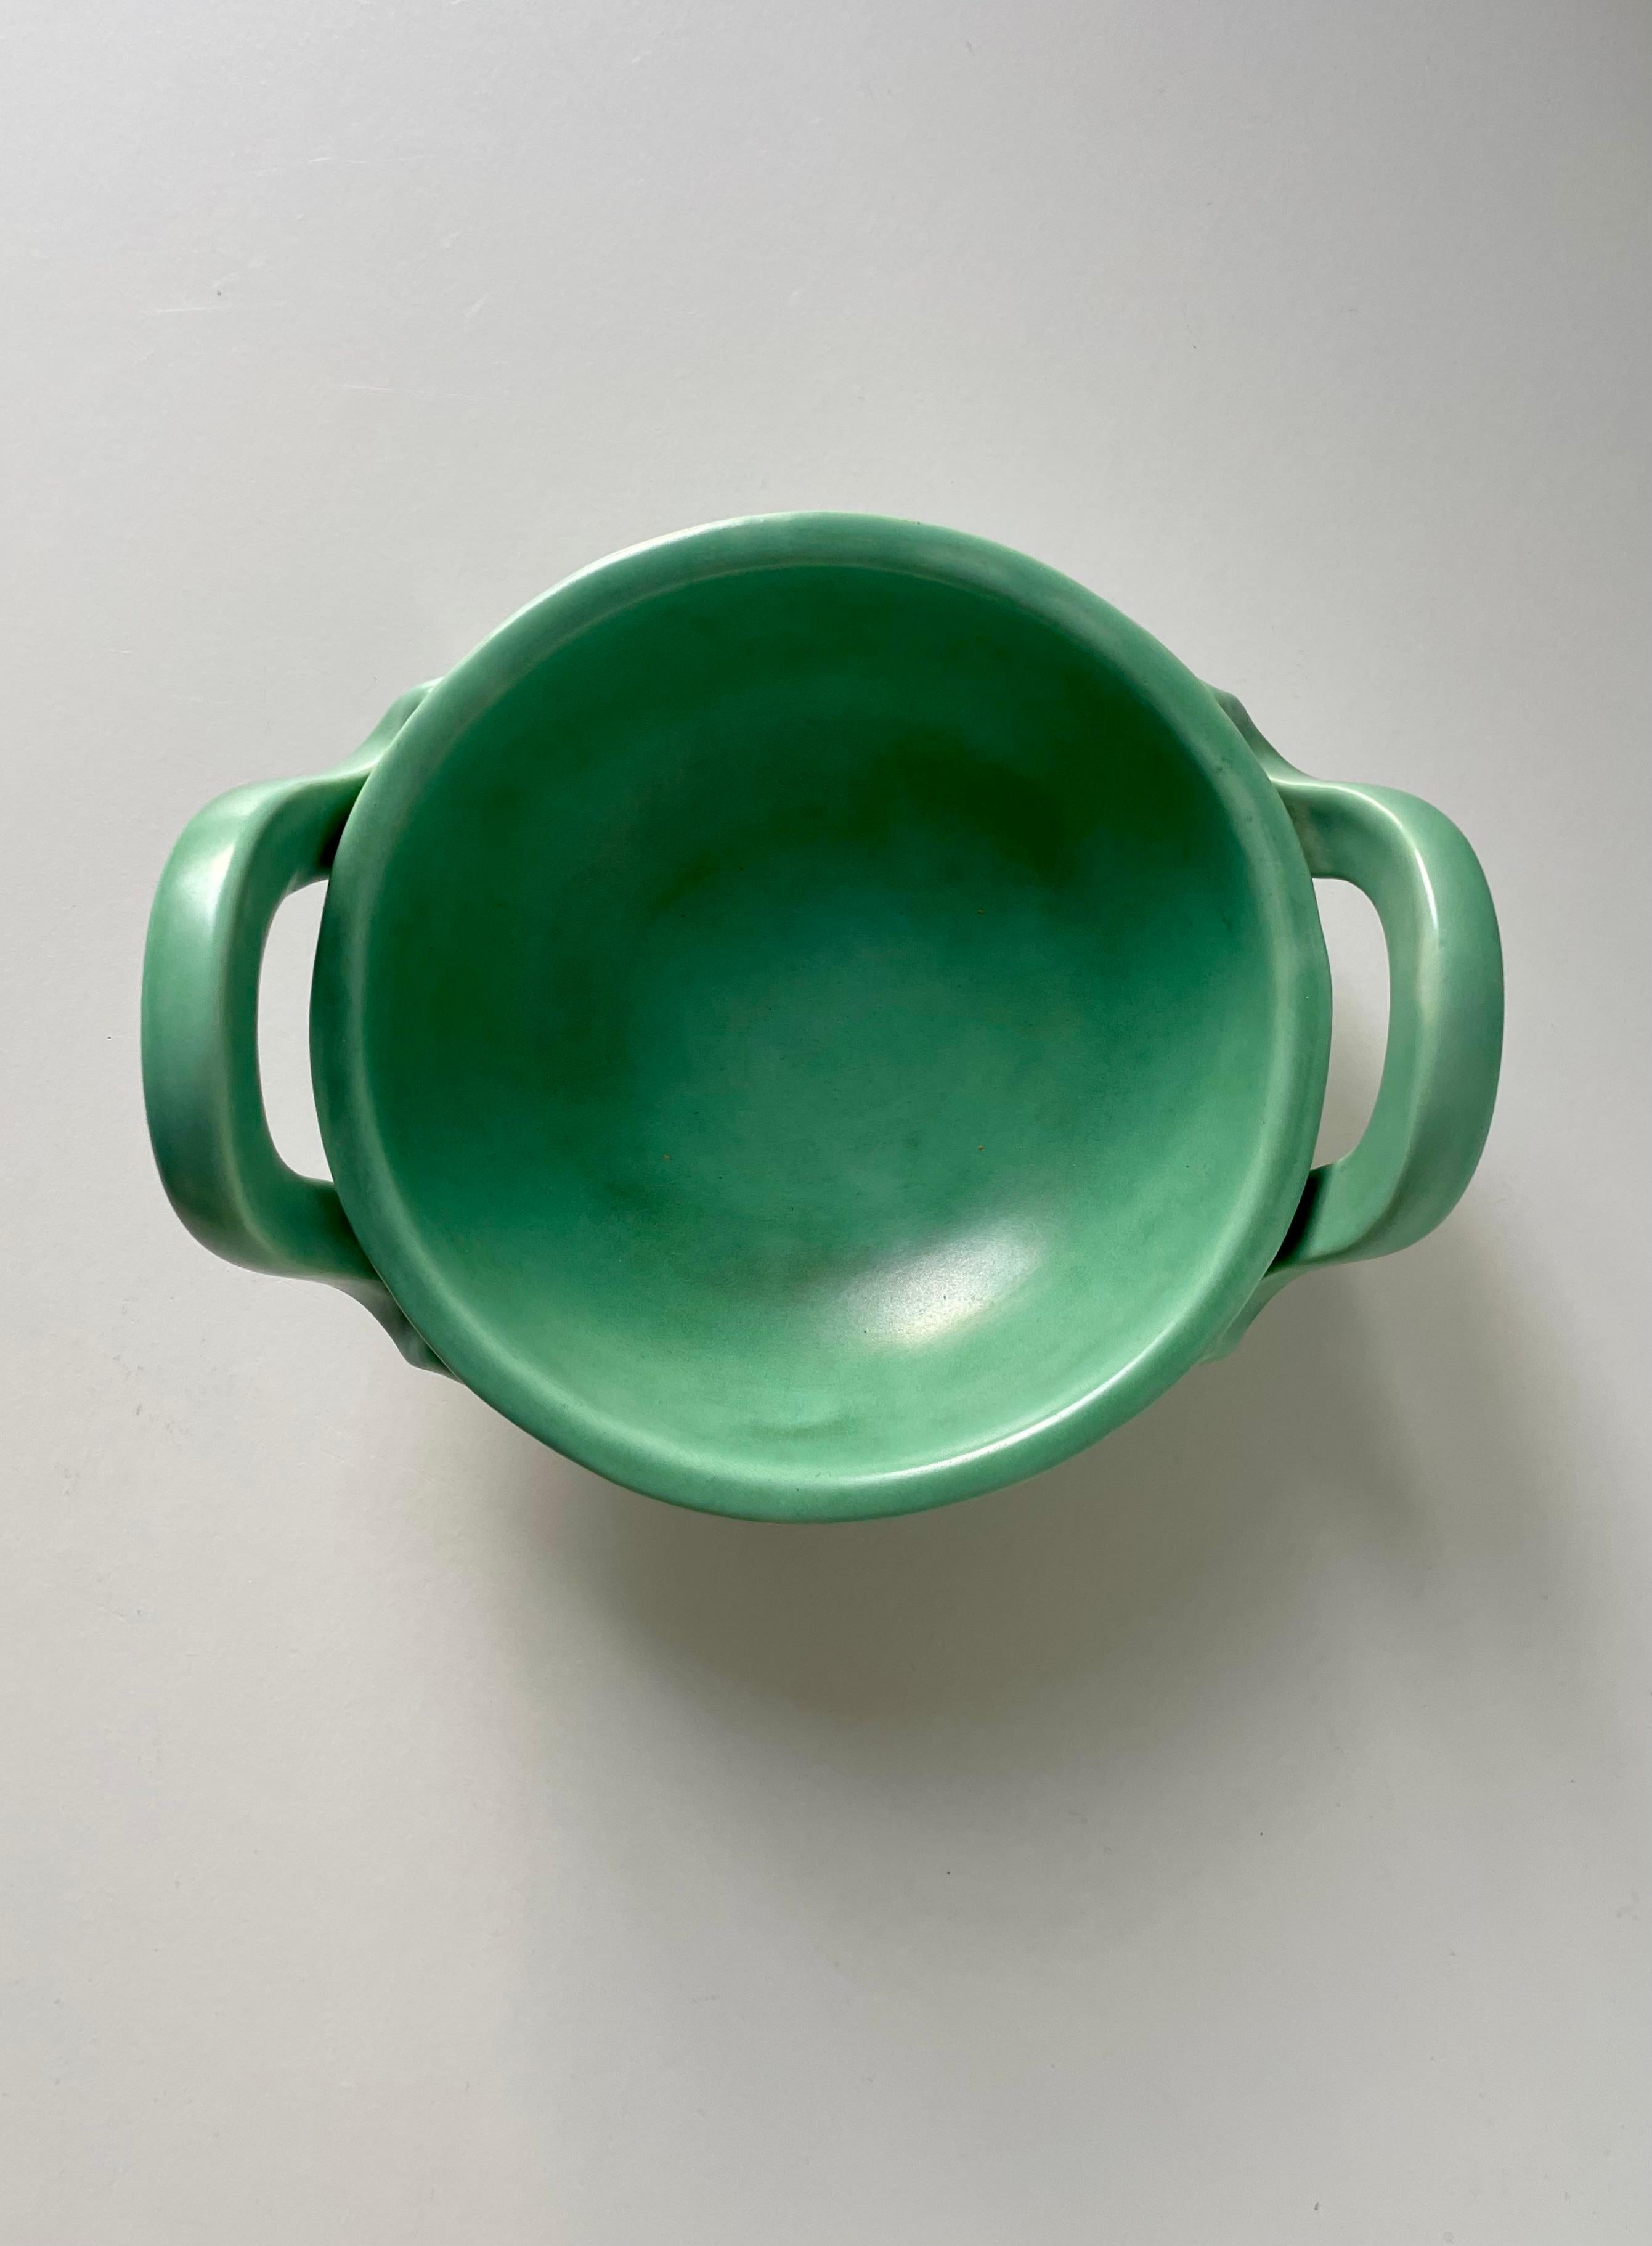 Arthur Percy 1940s Celadon Green Art Nouveau Handle Bowl, Sweden For Sale 5